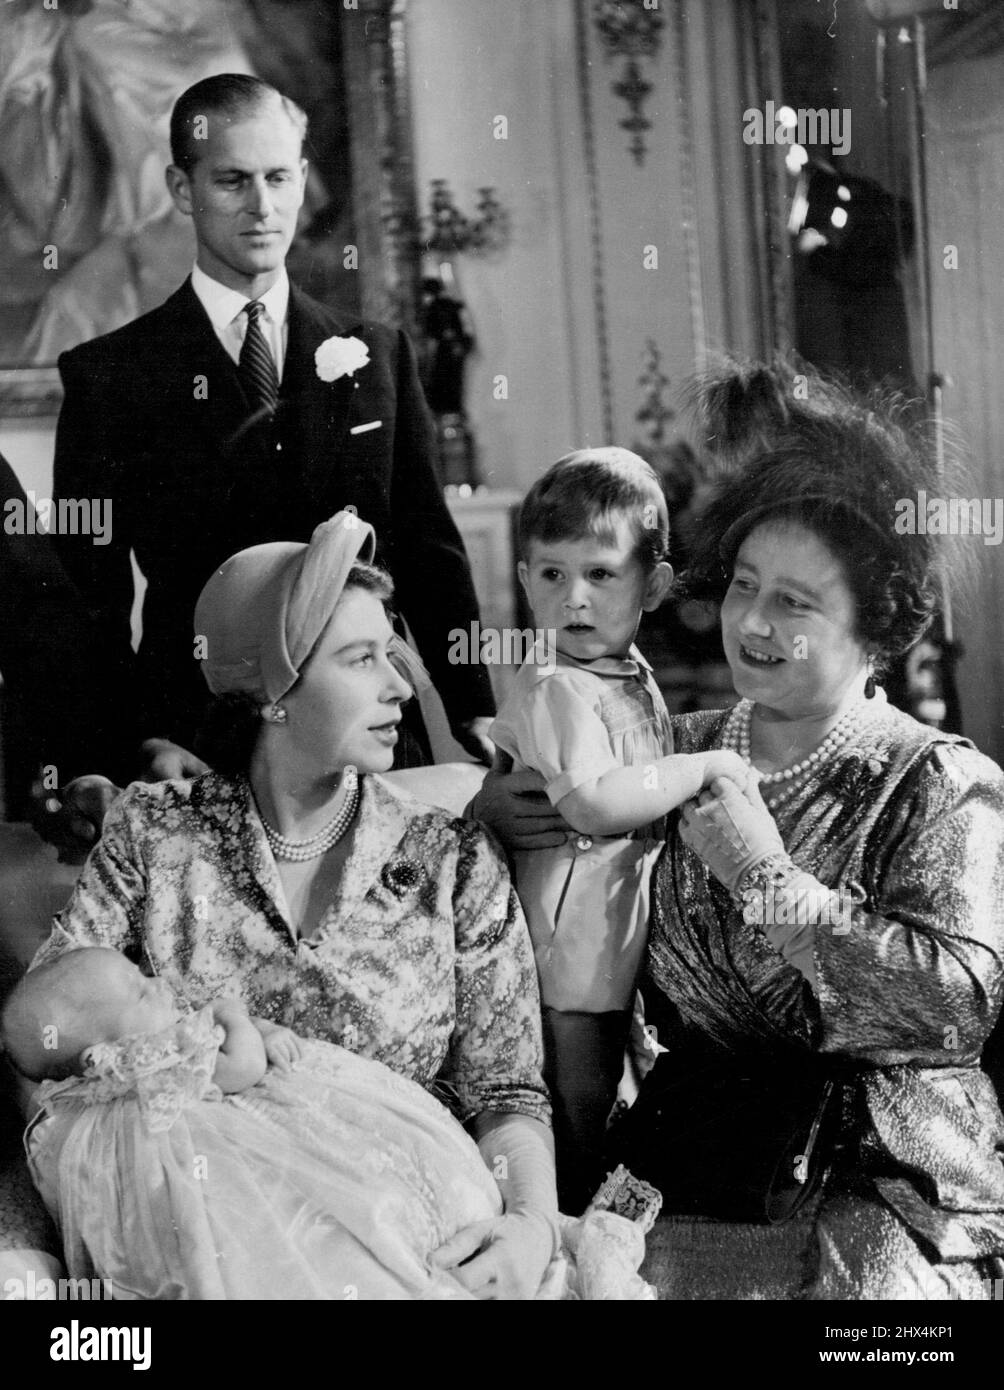 el-bautismo-de-la-princesa-ana-la-princesa-ana-la-segunda-hija-de-s-r-h-la-princesa-elizabeth-y-el-duque-de-edimburgo-fue-bautizada-en-el-palacio-de-buckingham-el-21st-de-octubre-de-1950-la-reina-sosteniendo-al-principe-carlos-habla-con-su-alteza-real-la-princesa-elizabeth-quien-tiene-a-la-princesa-ana-en-sus-brazos-detras-esta-h-r-h-el-duque-de-edimburgo-08-de-noviembre-de-1950-foto-de-baron-camera-press-2hx4kp1.jpg